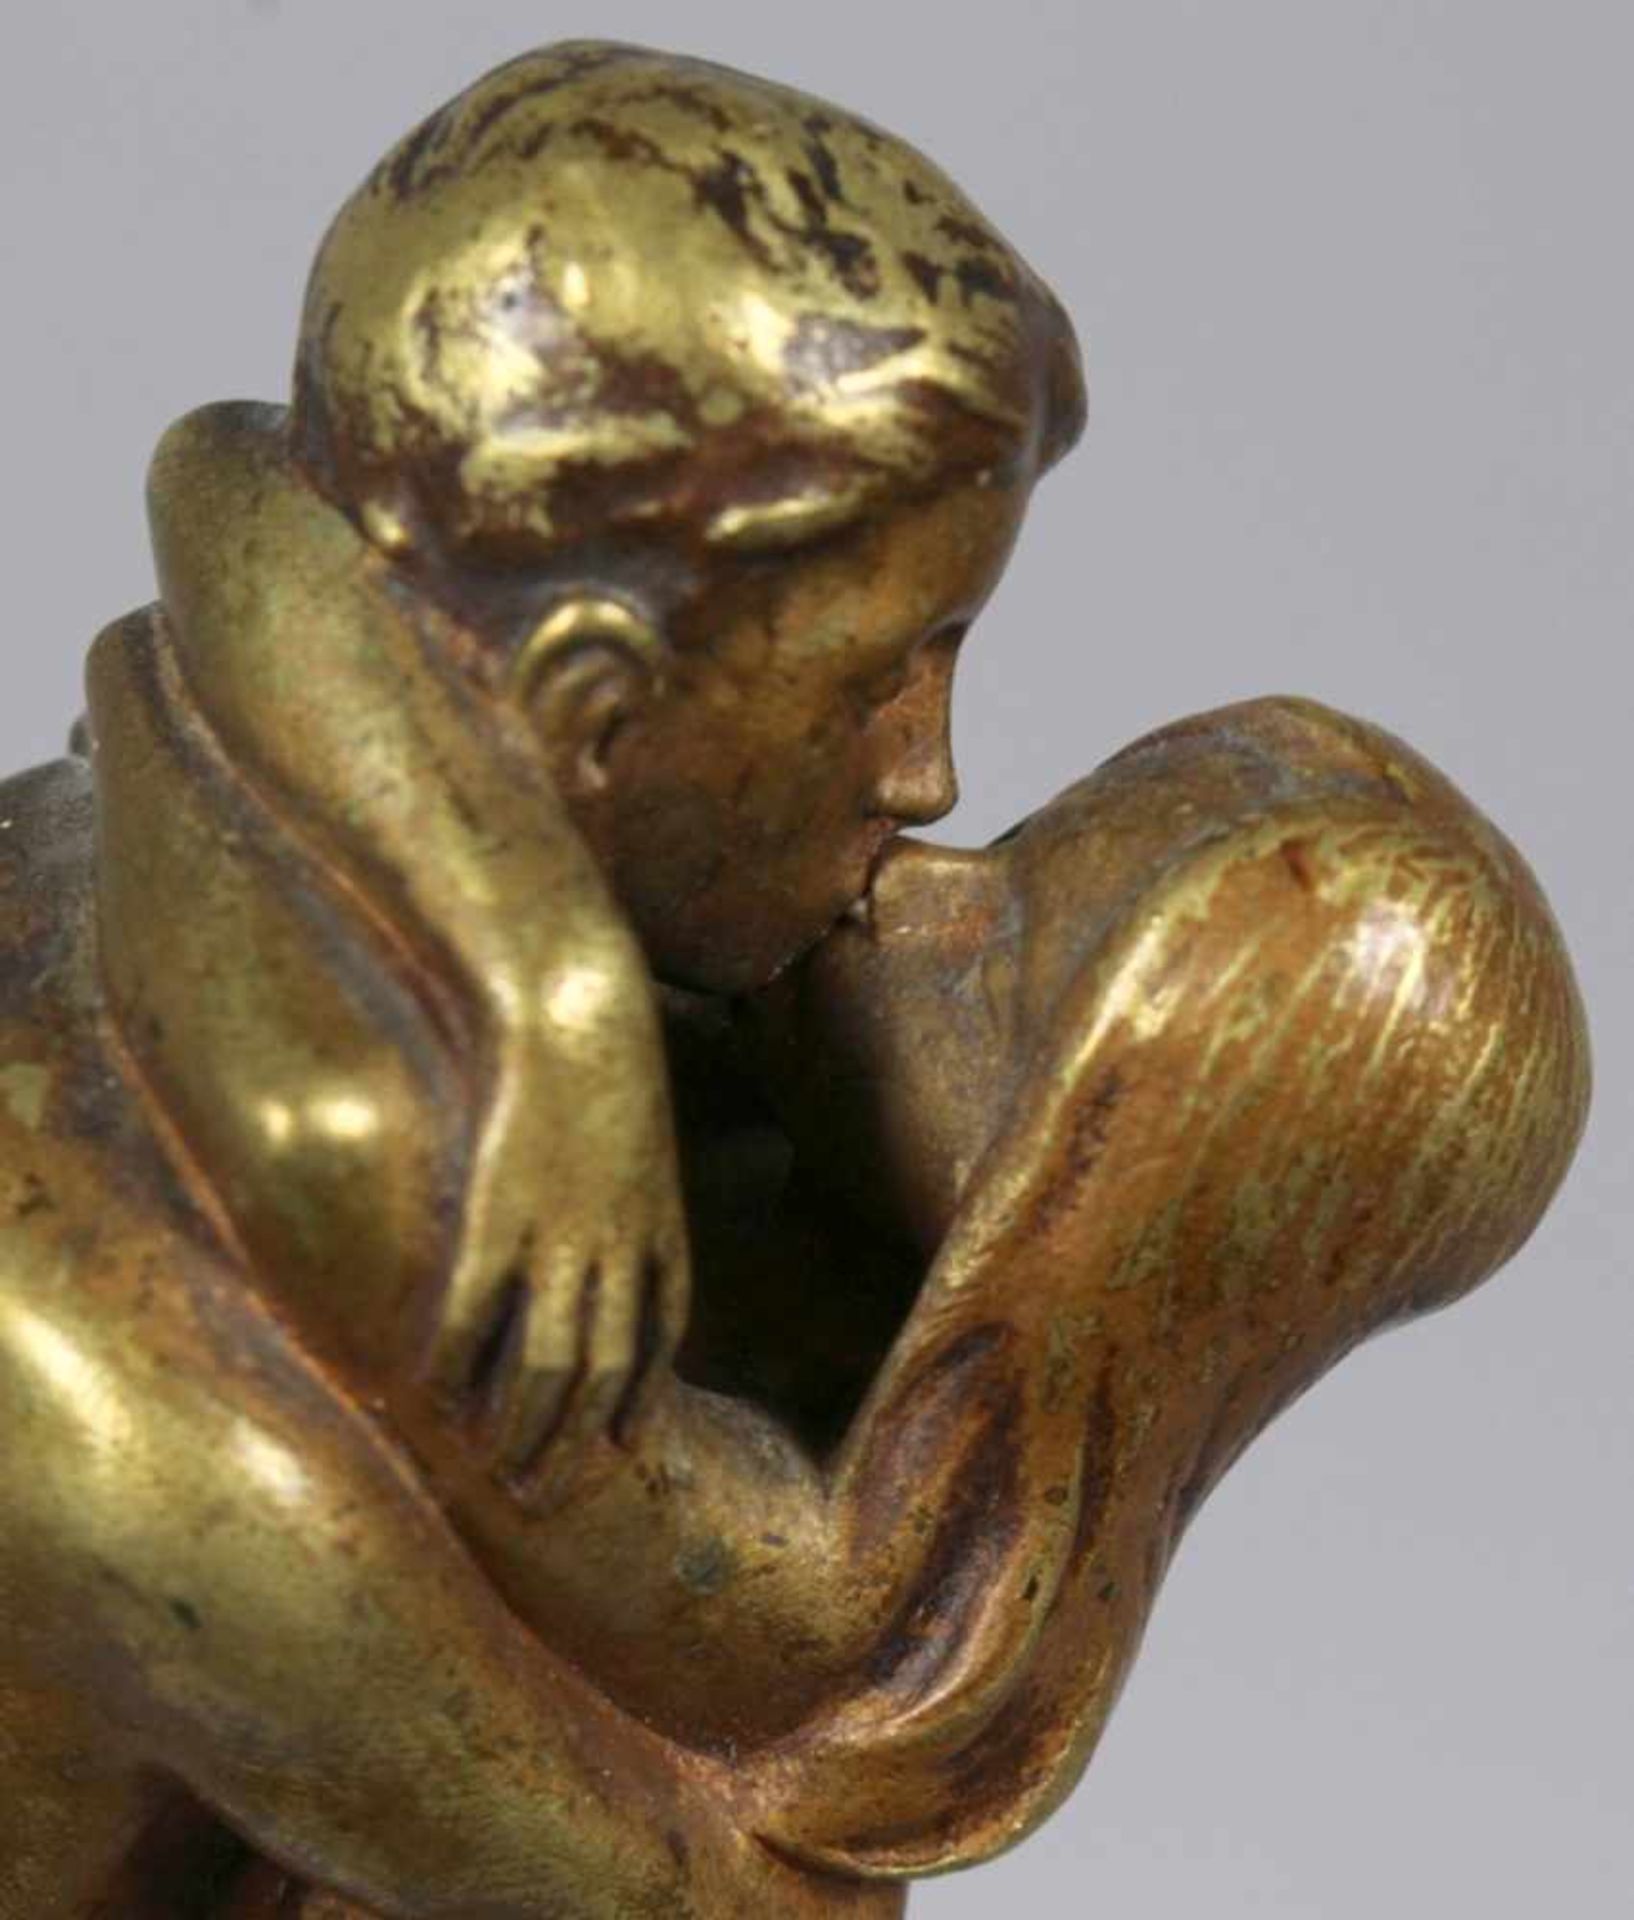 Bronze-Plastik, "Sich küssendes, nacktes Paar", Bergmann, Wien, um 1910, vollplastische, - Bild 3 aus 4